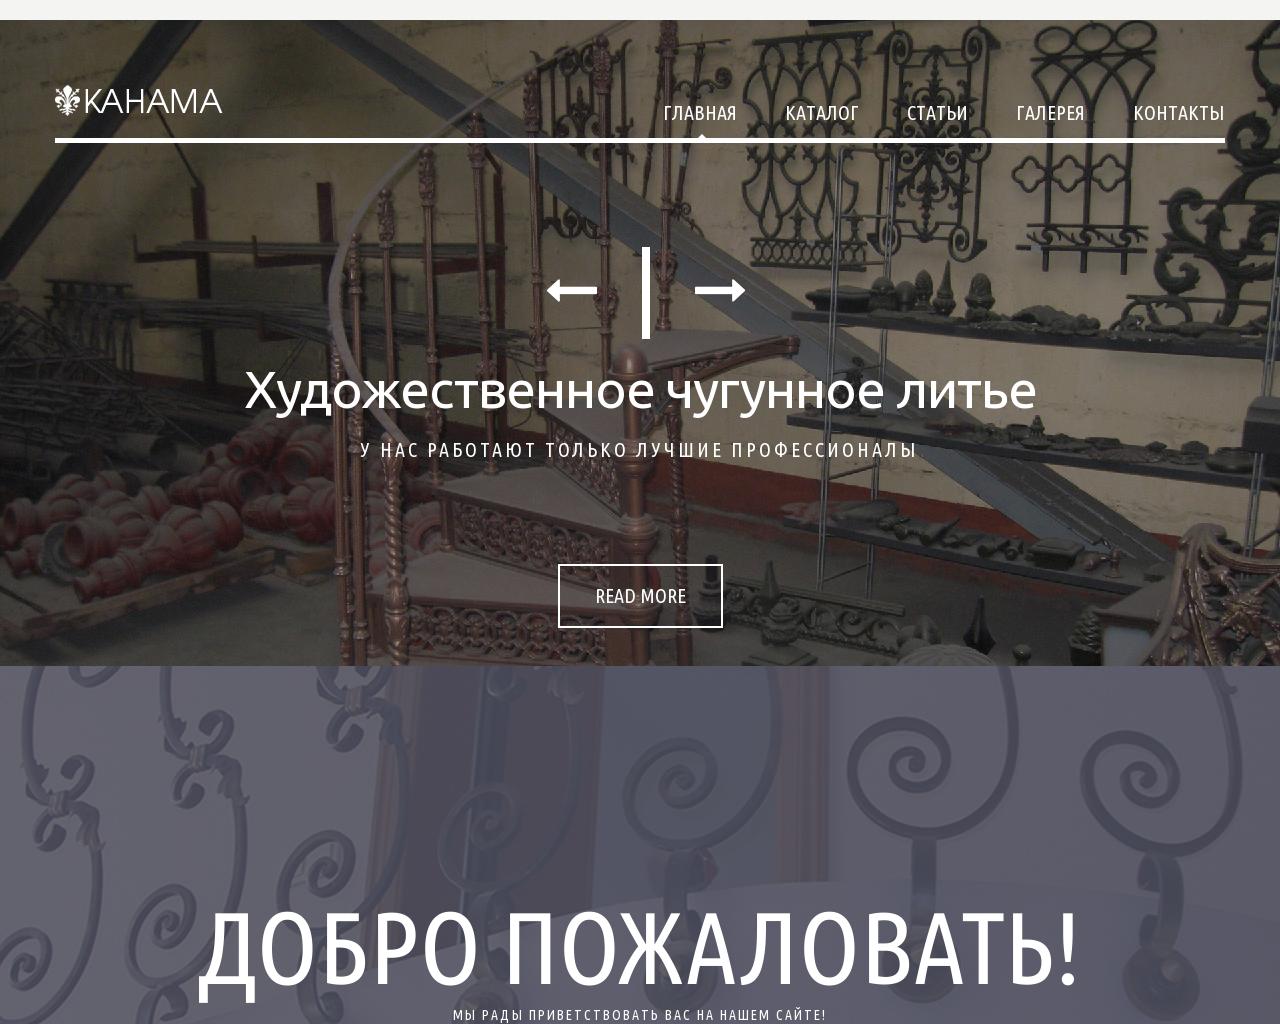 Изображение сайта kanama.ru в разрешении 1280x1024